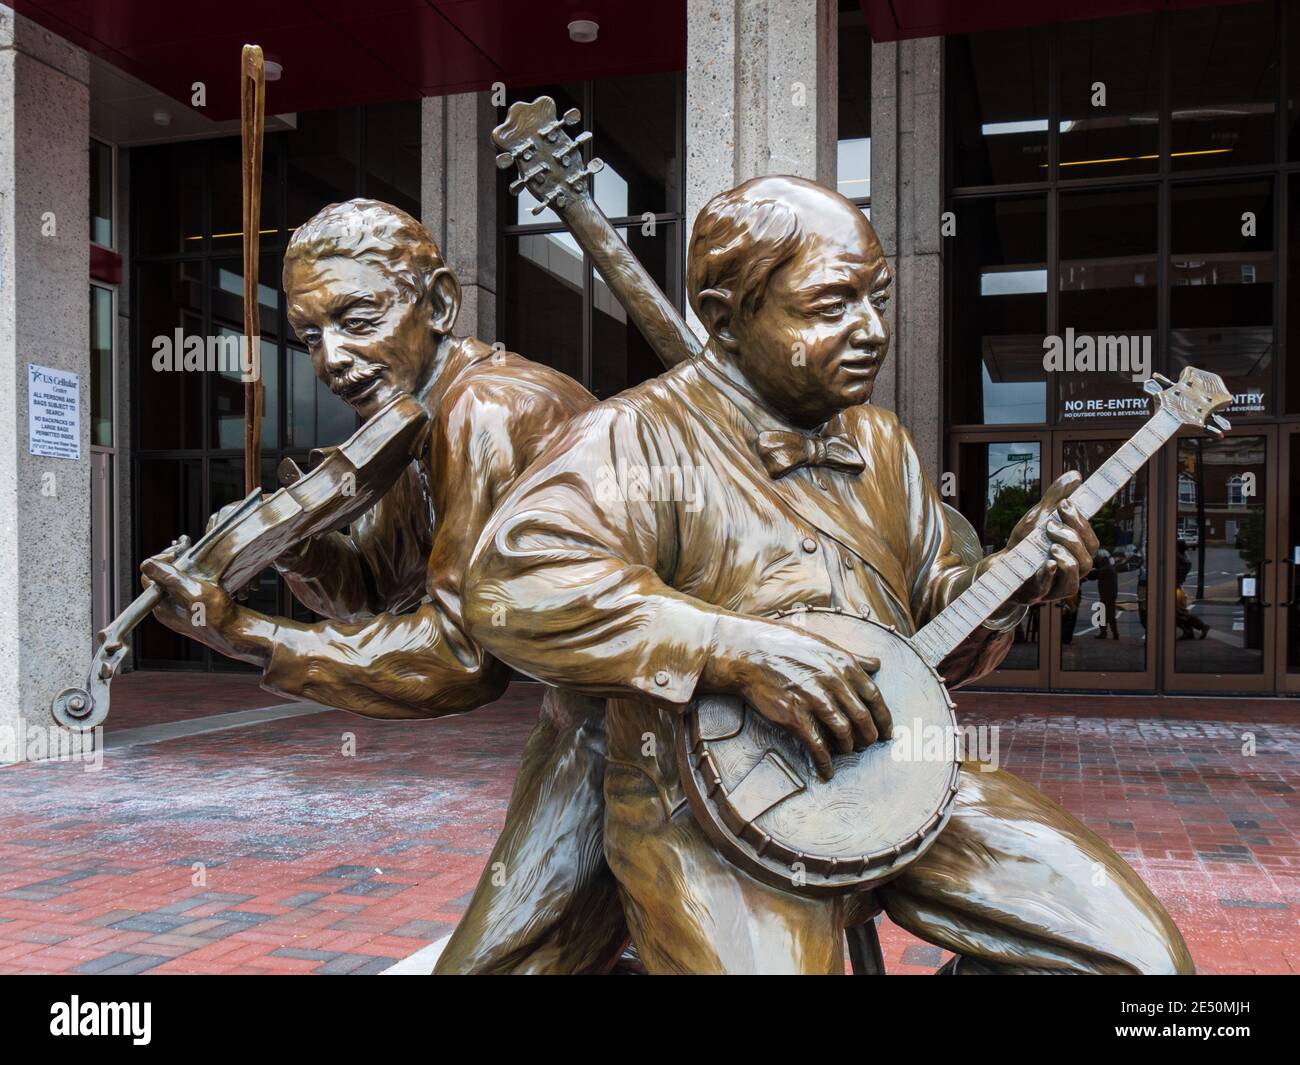 Asheville, NC - 4. Mai 2017: Skulpturen von Gary Aslum eines Banjoisten und Geigers stehen vor dem Thomas Wolfe Auditorium und zollen dem Kultu Tribut Stockfoto